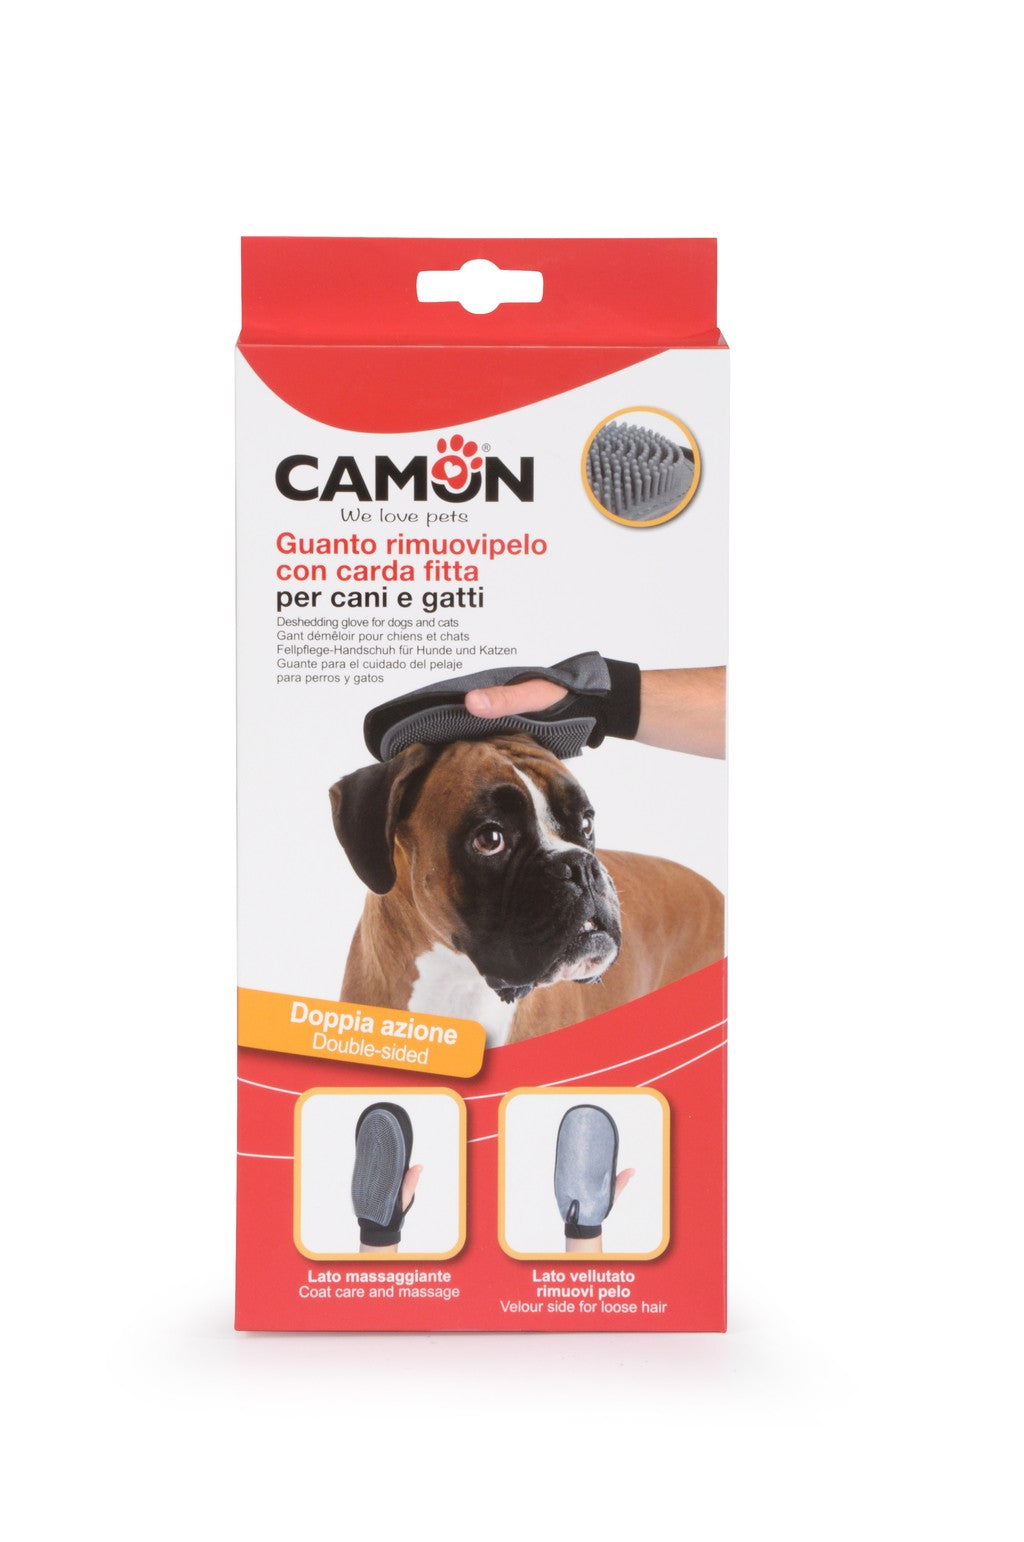 Camon Guanto rimuovipelo con carda fitta per cani e gatti - B190/A